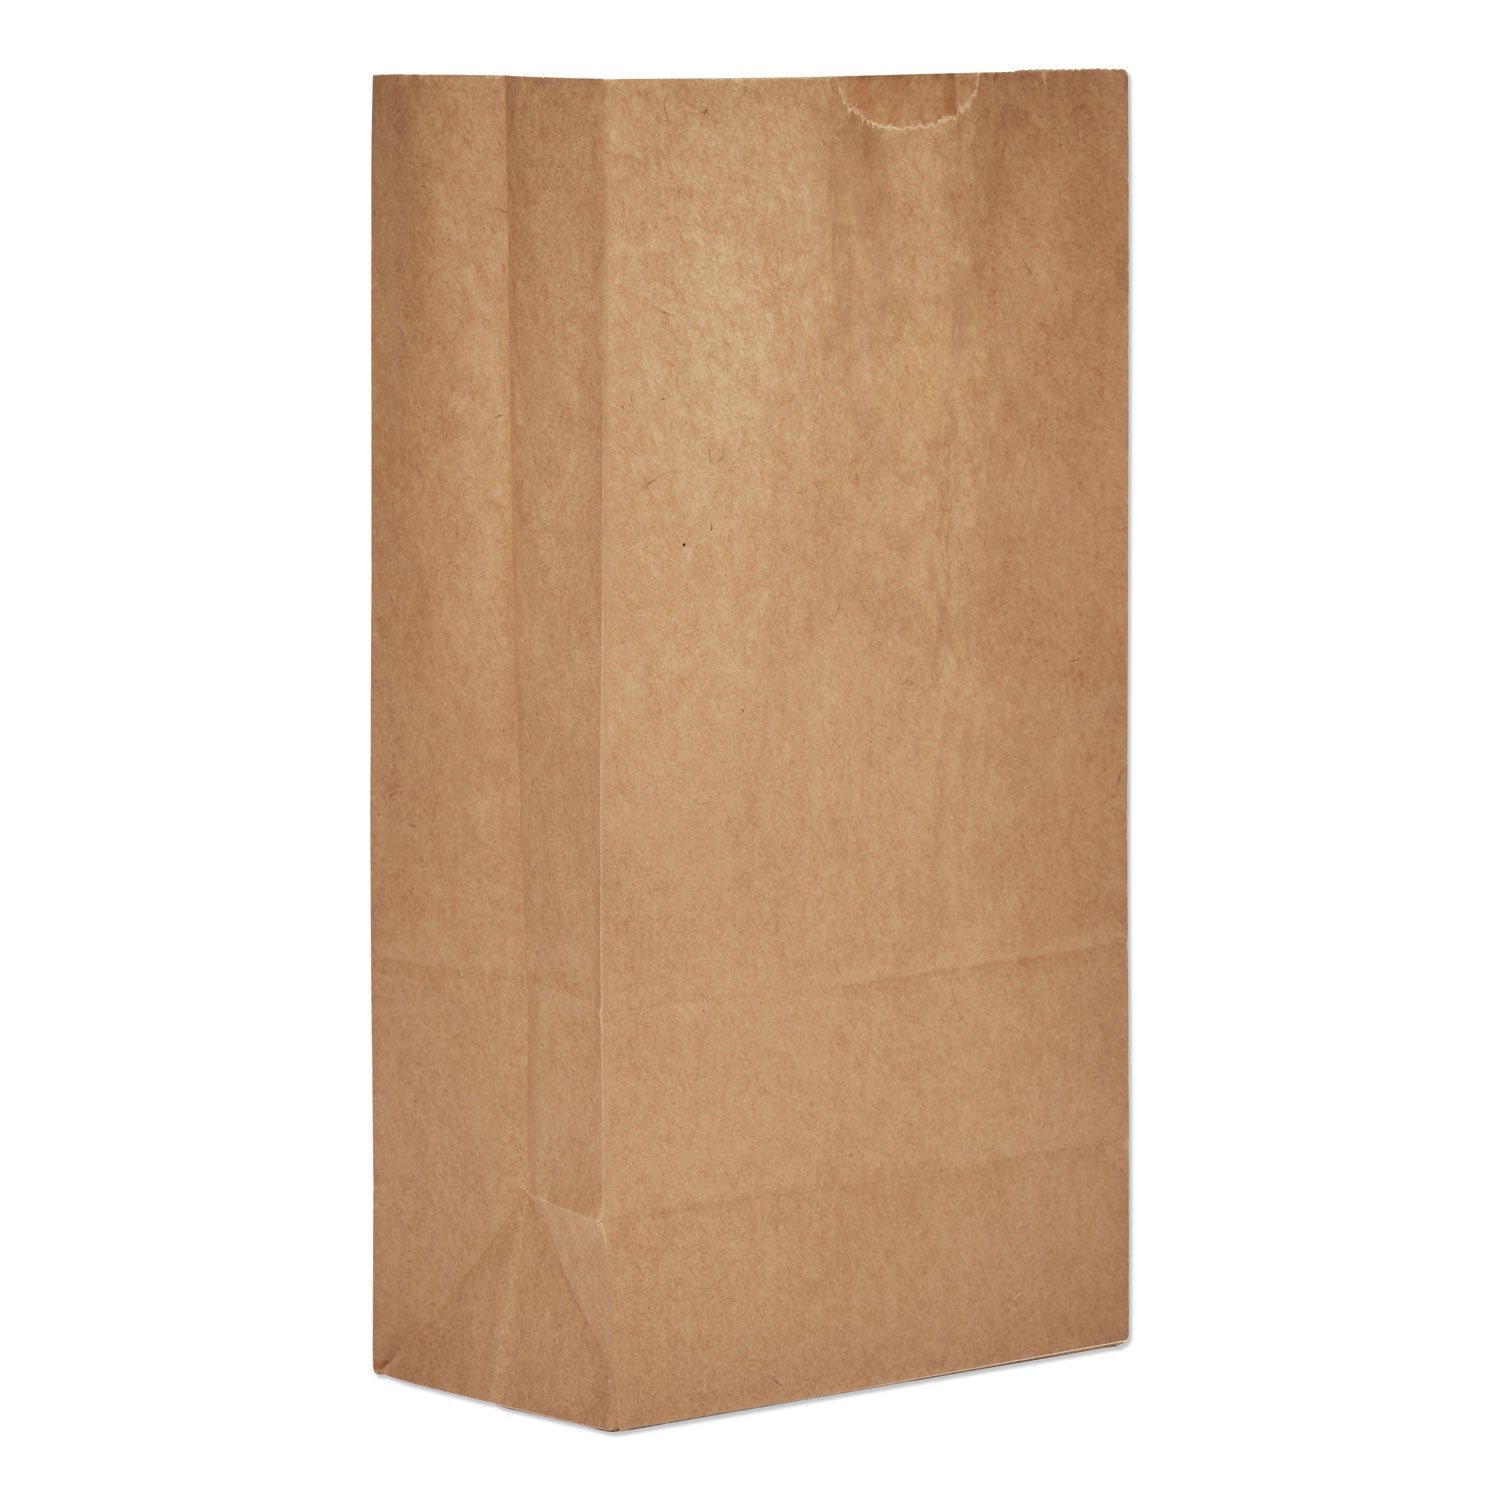 grocery-paper-bags-50-lb-capacity-#5-525-x-344-x-1094-kraft-500-bags_baggx5500 - 1